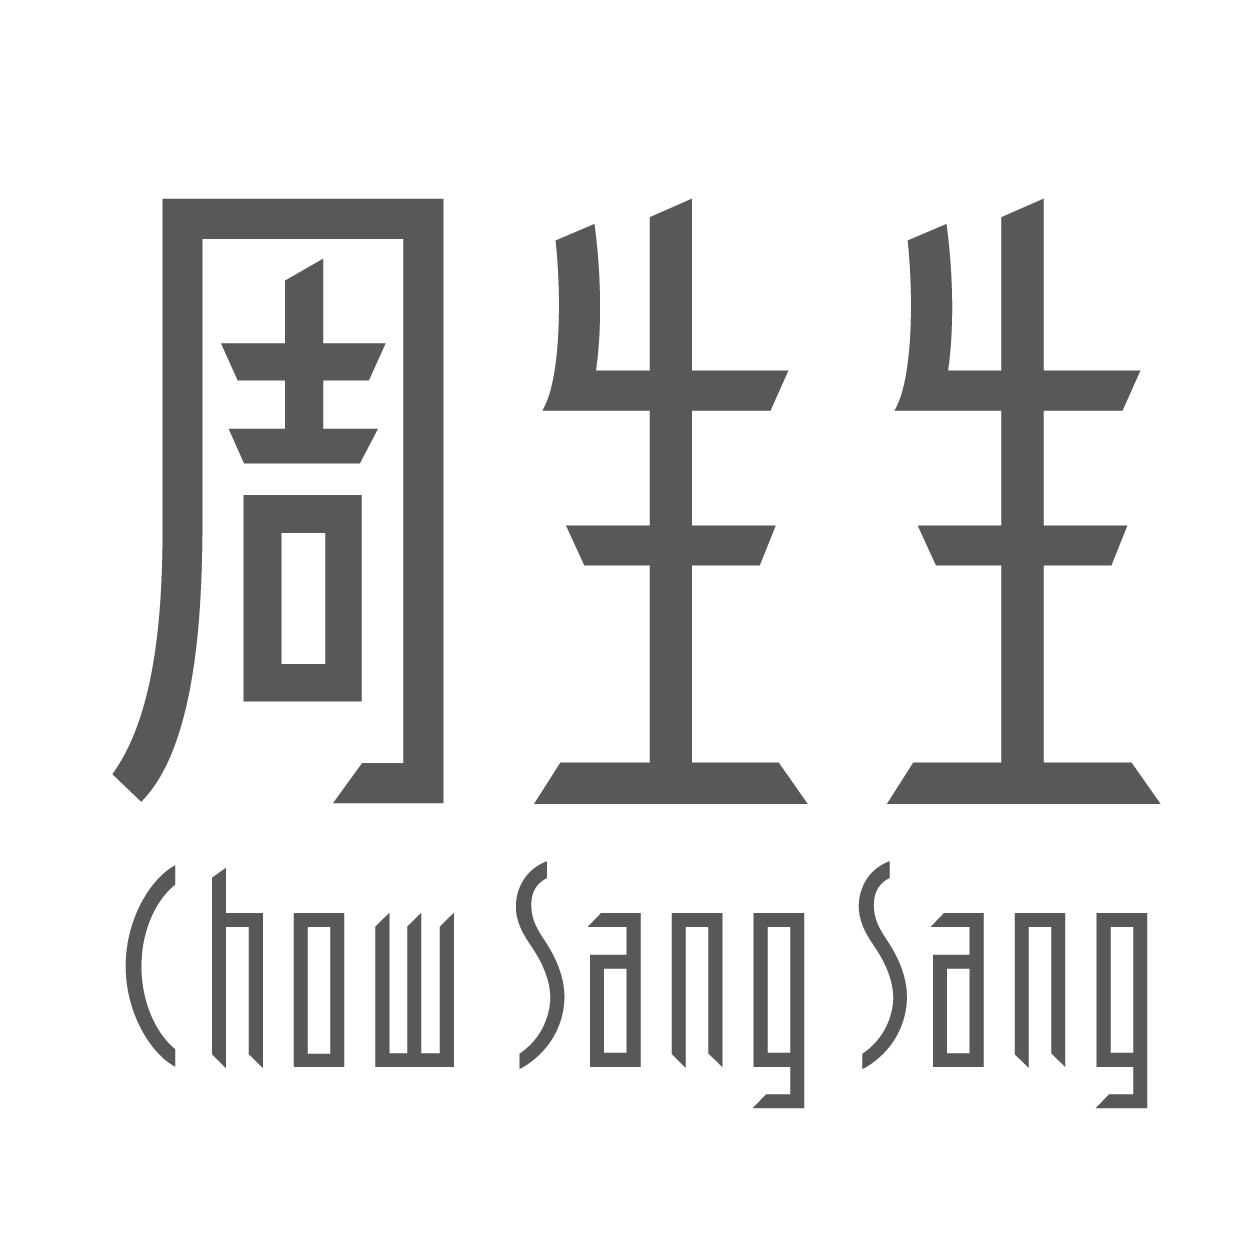 Chow Sang Sang